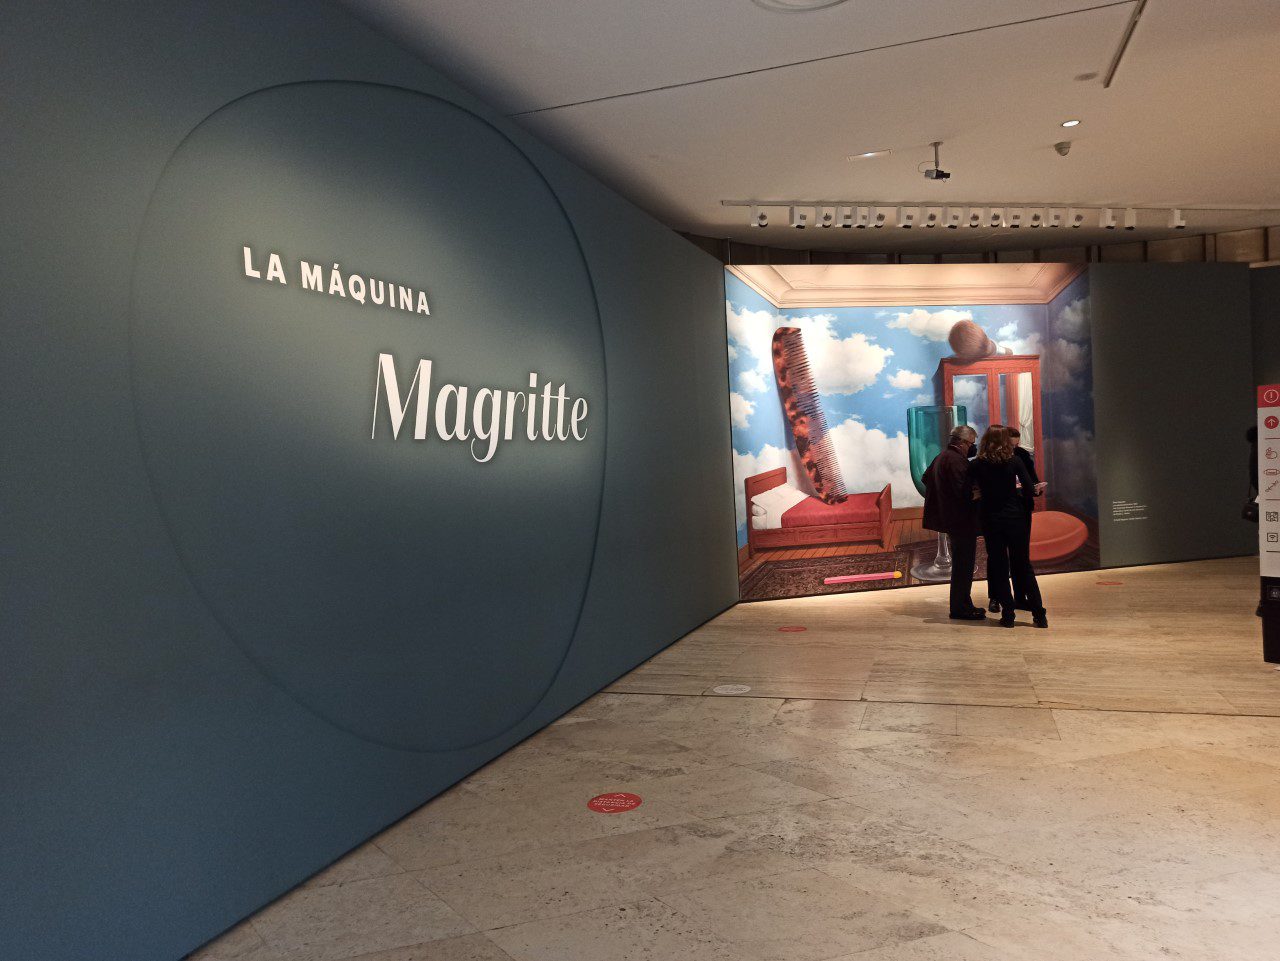 La Máquina Magritte